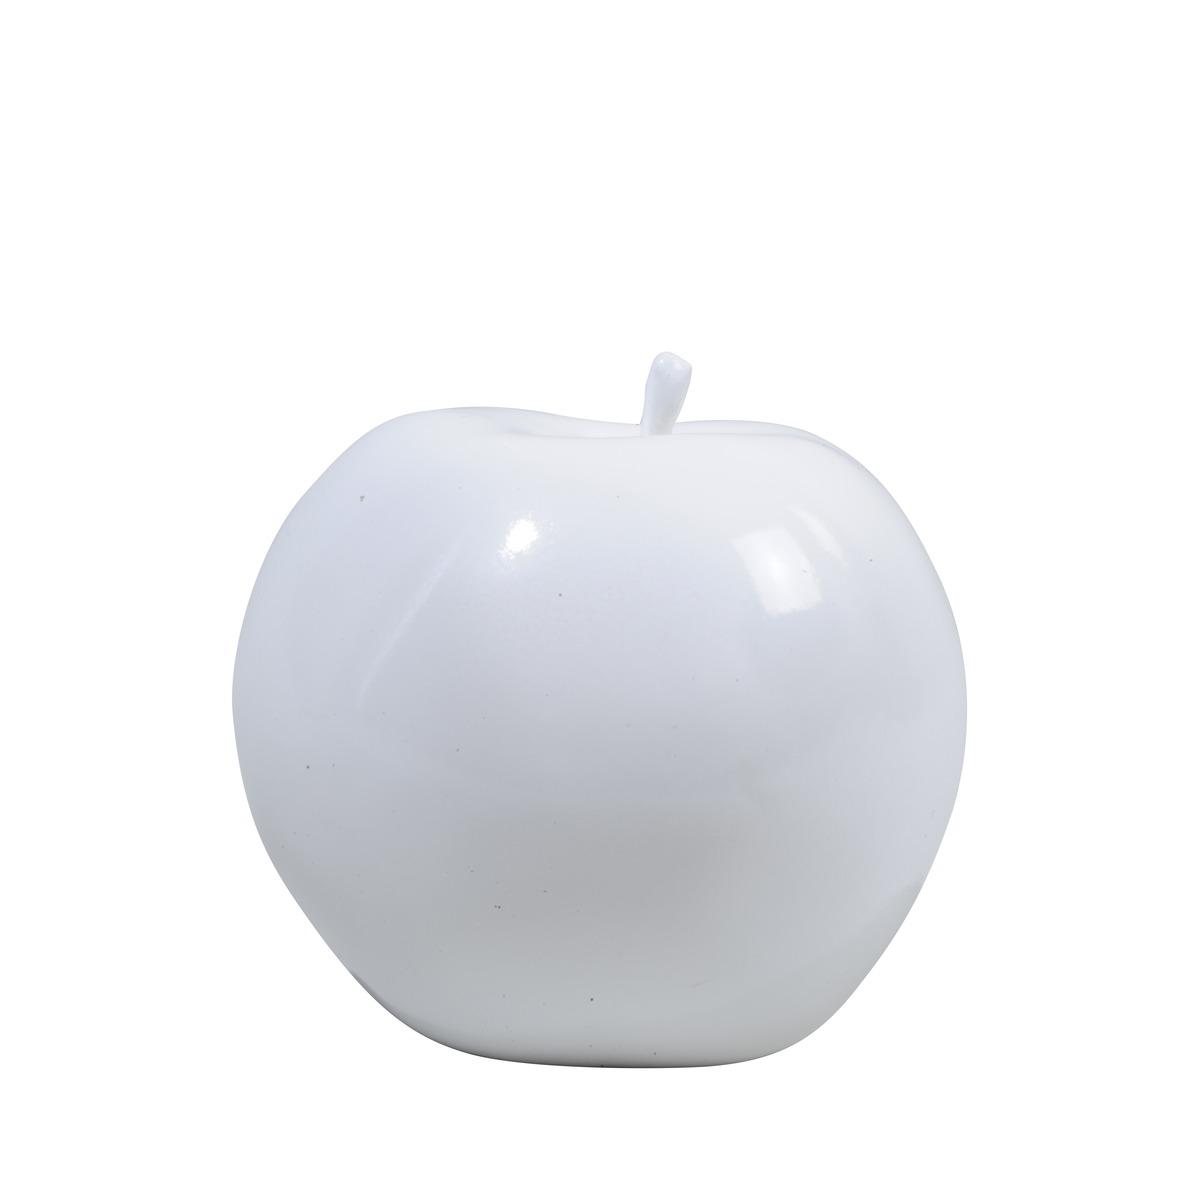 Suspension pomme - 5,5 cm - Blanc